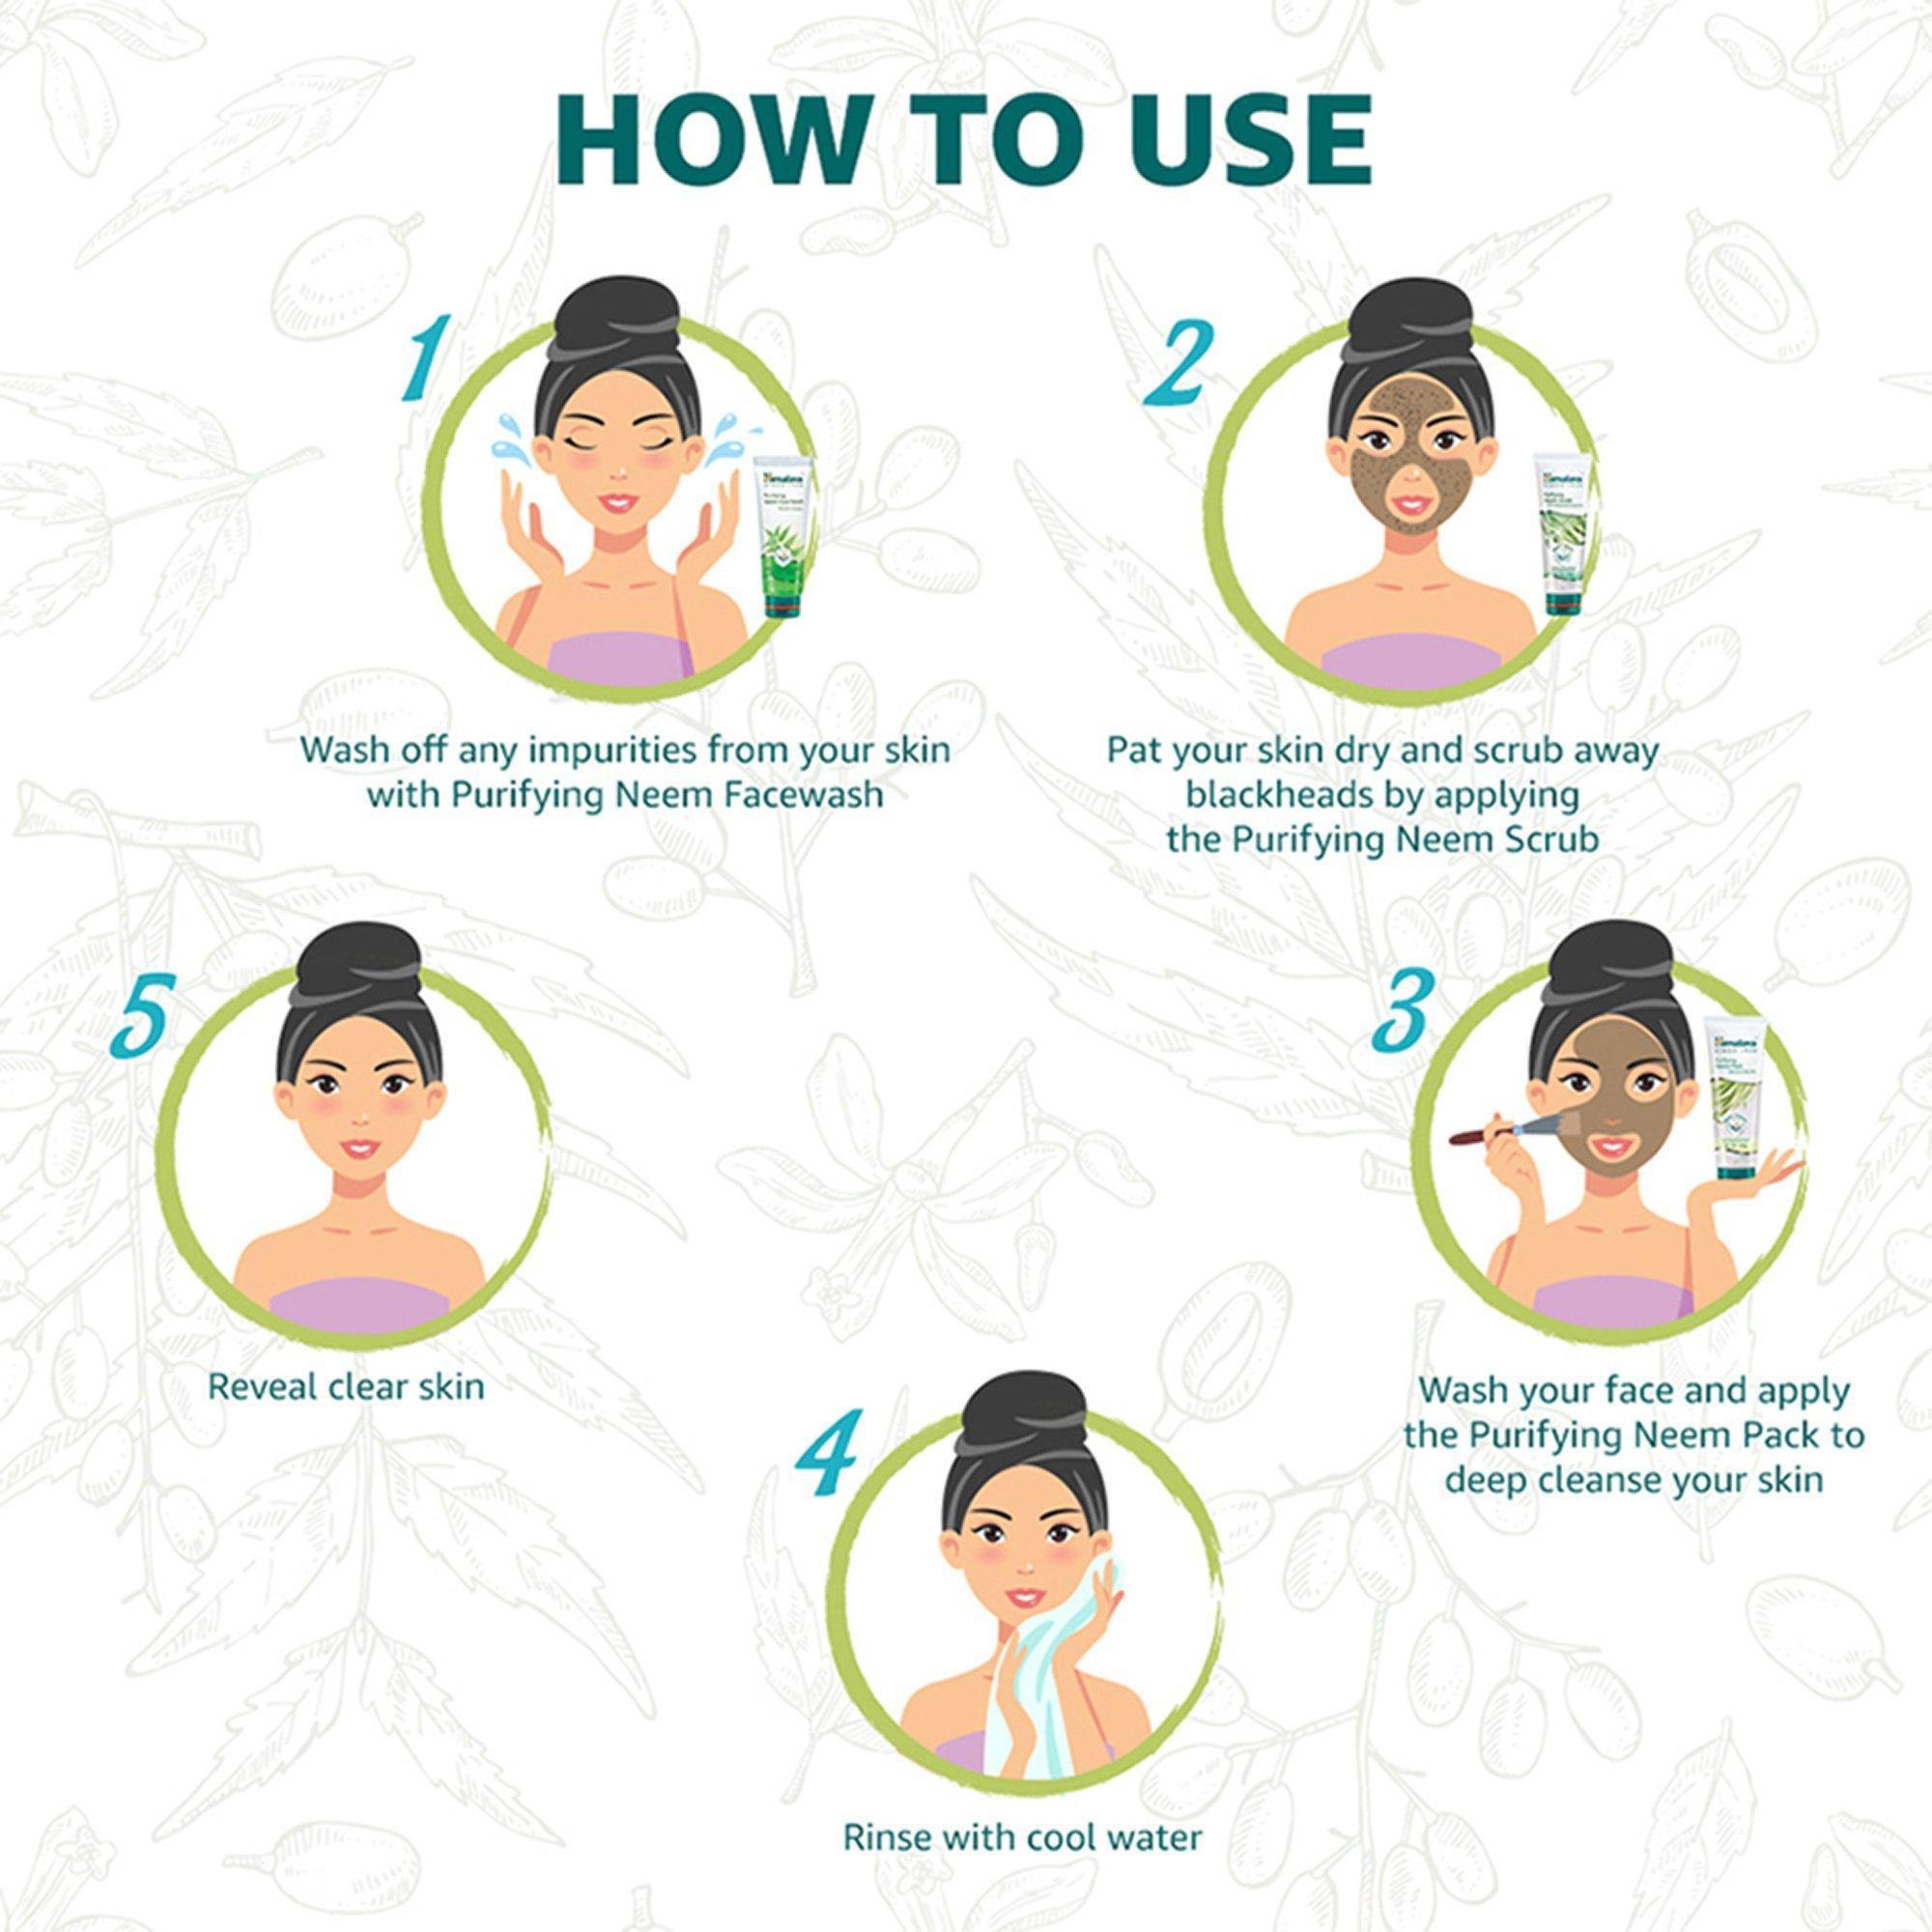 Himalaya Pure Skin Neem Facial Kit - How to Use?